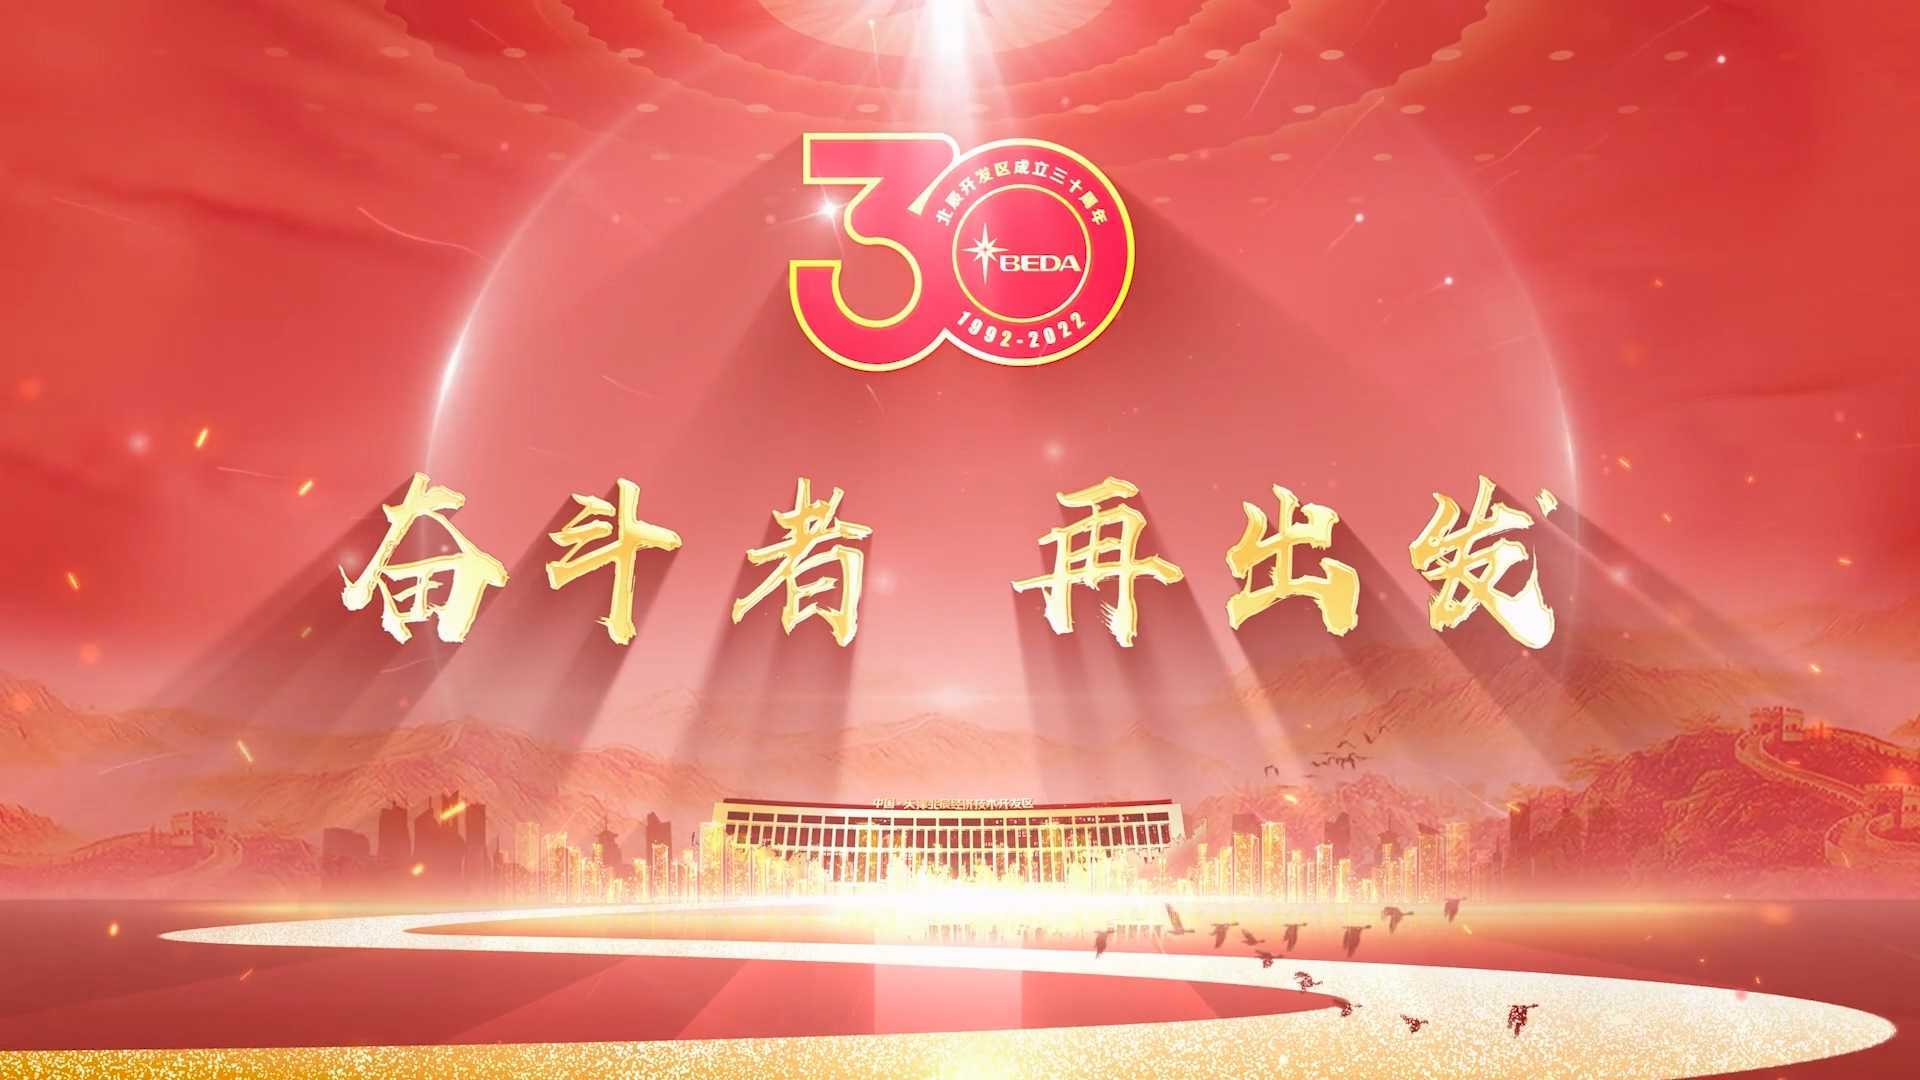 奋斗者再出发-北辰开发区30周年宣传片